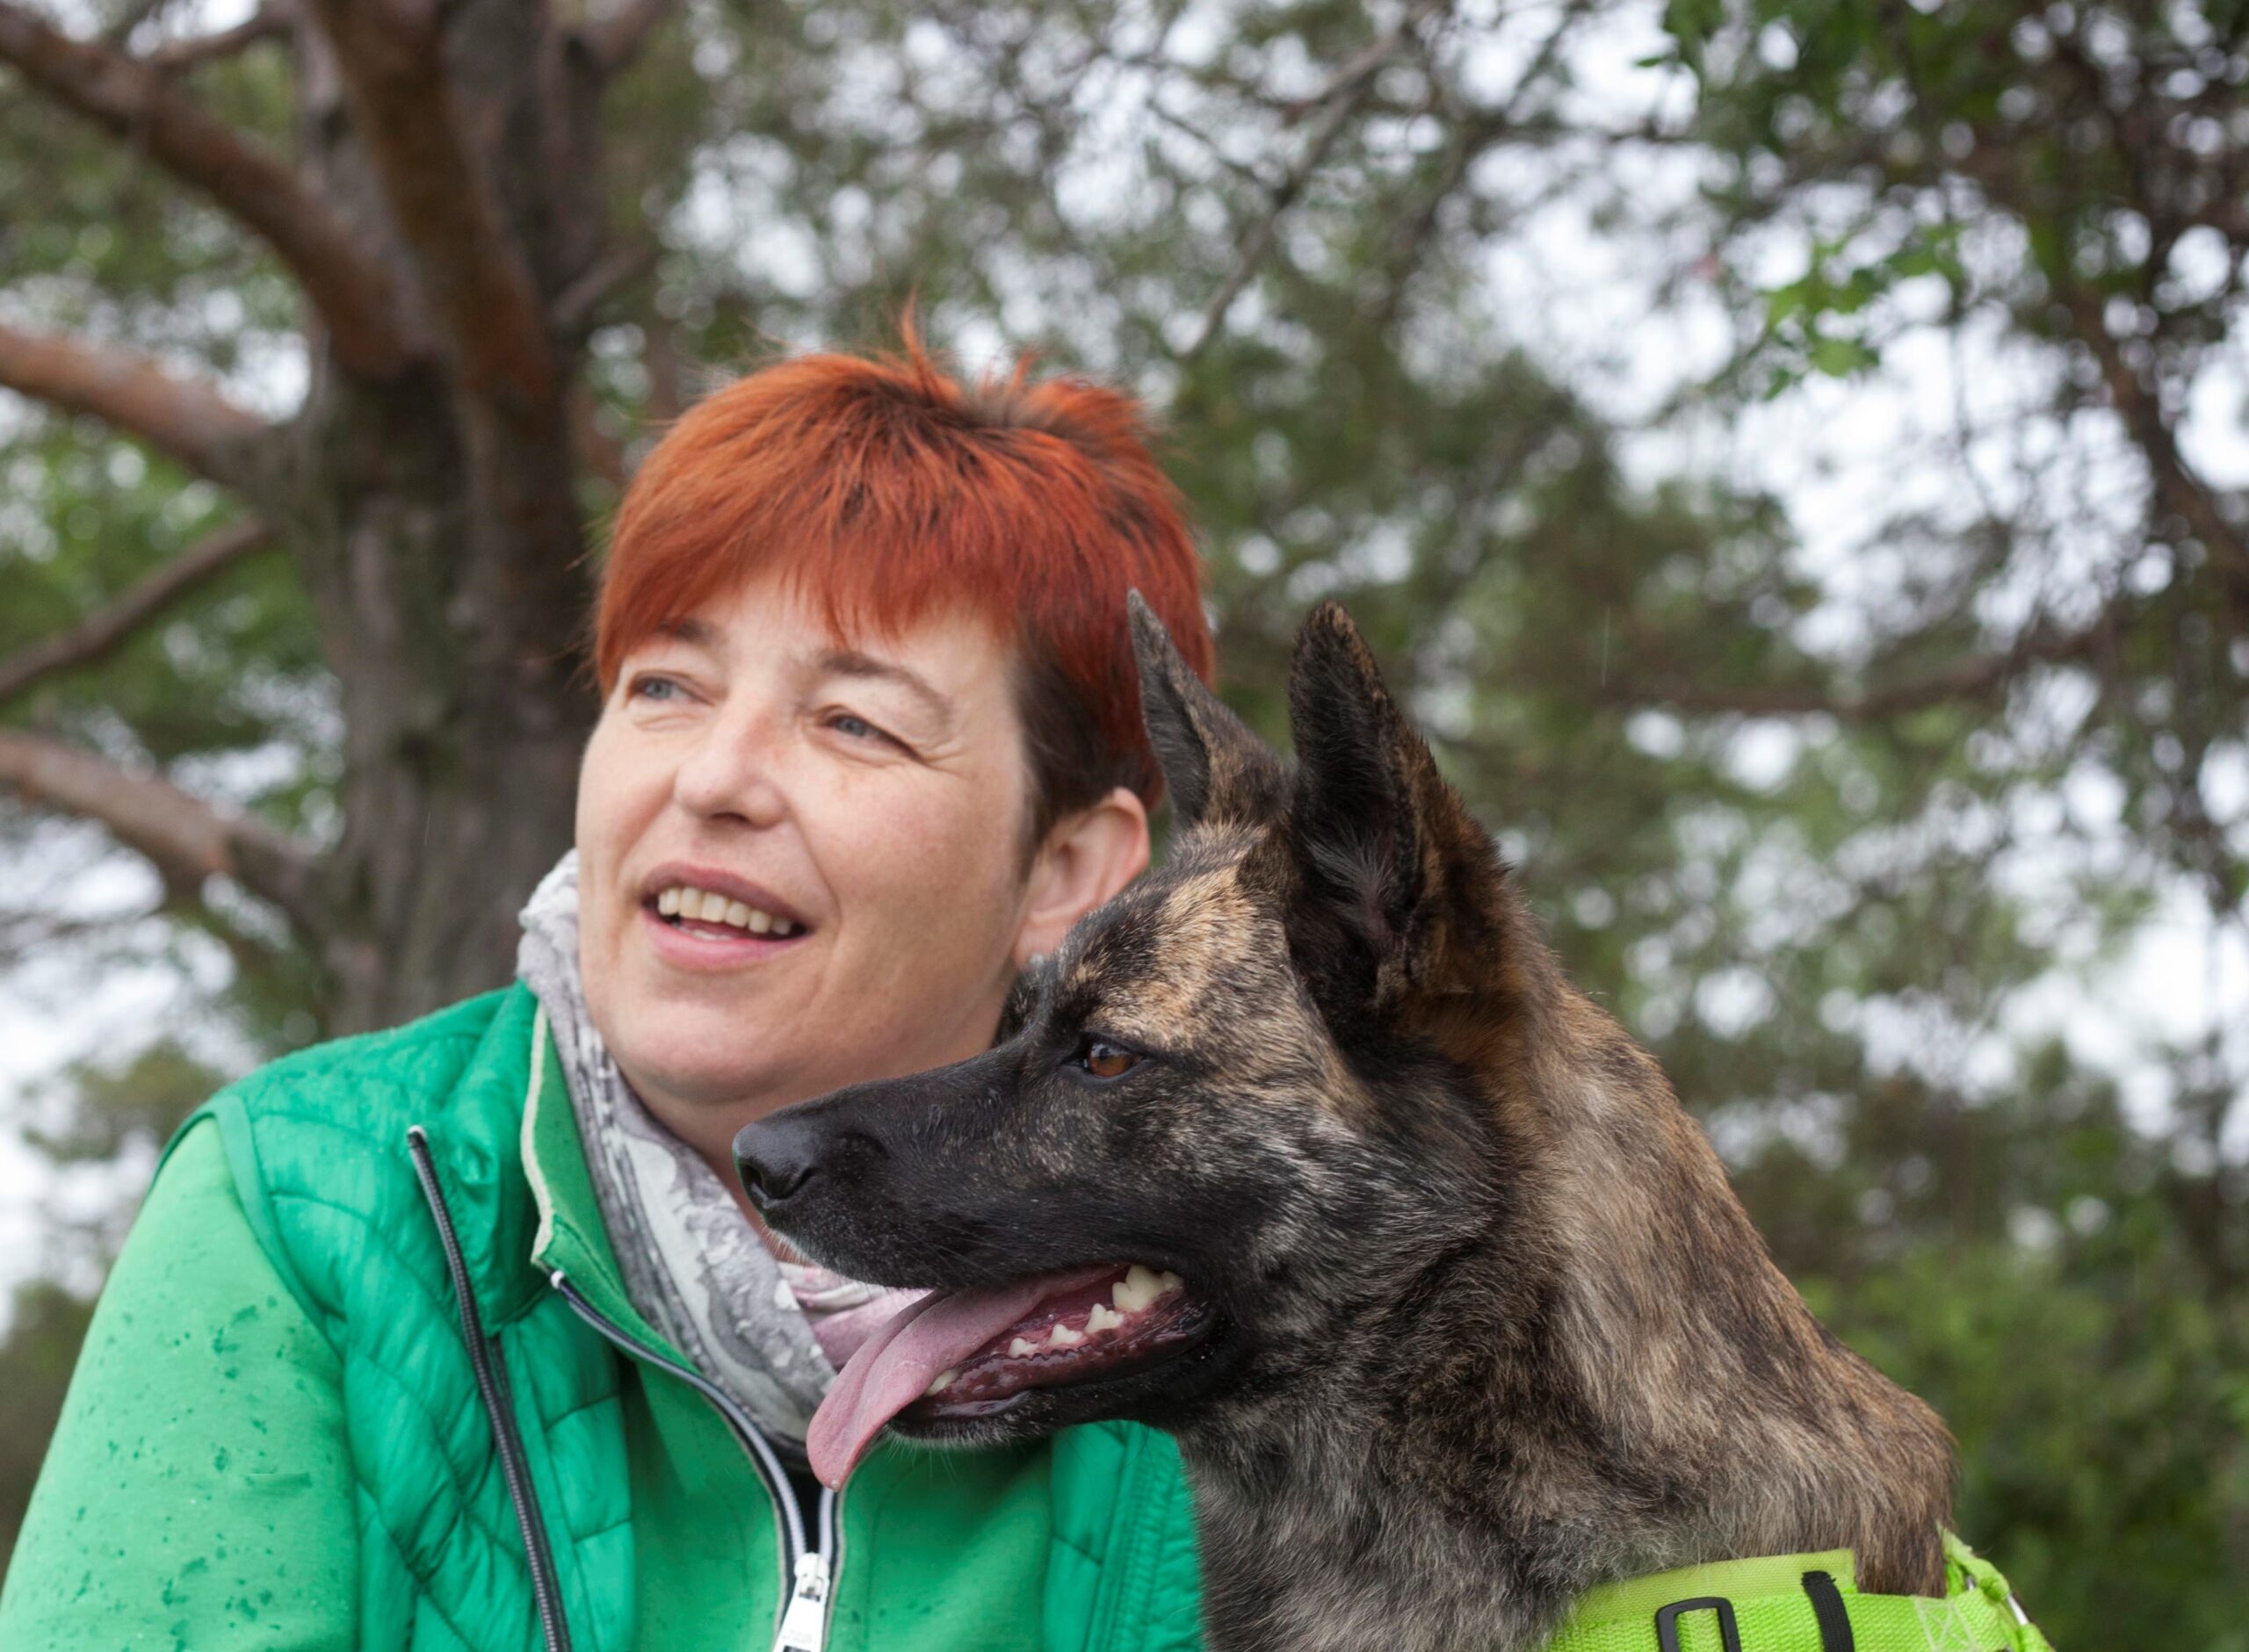 Annette Unterweger in der Natur, blickt lächelnd in die Ferne. Sie hat rotes, kurzes Haar und trägt eine grüne Jacke. Rechts von ihr, ihr Schäferhund Charly.